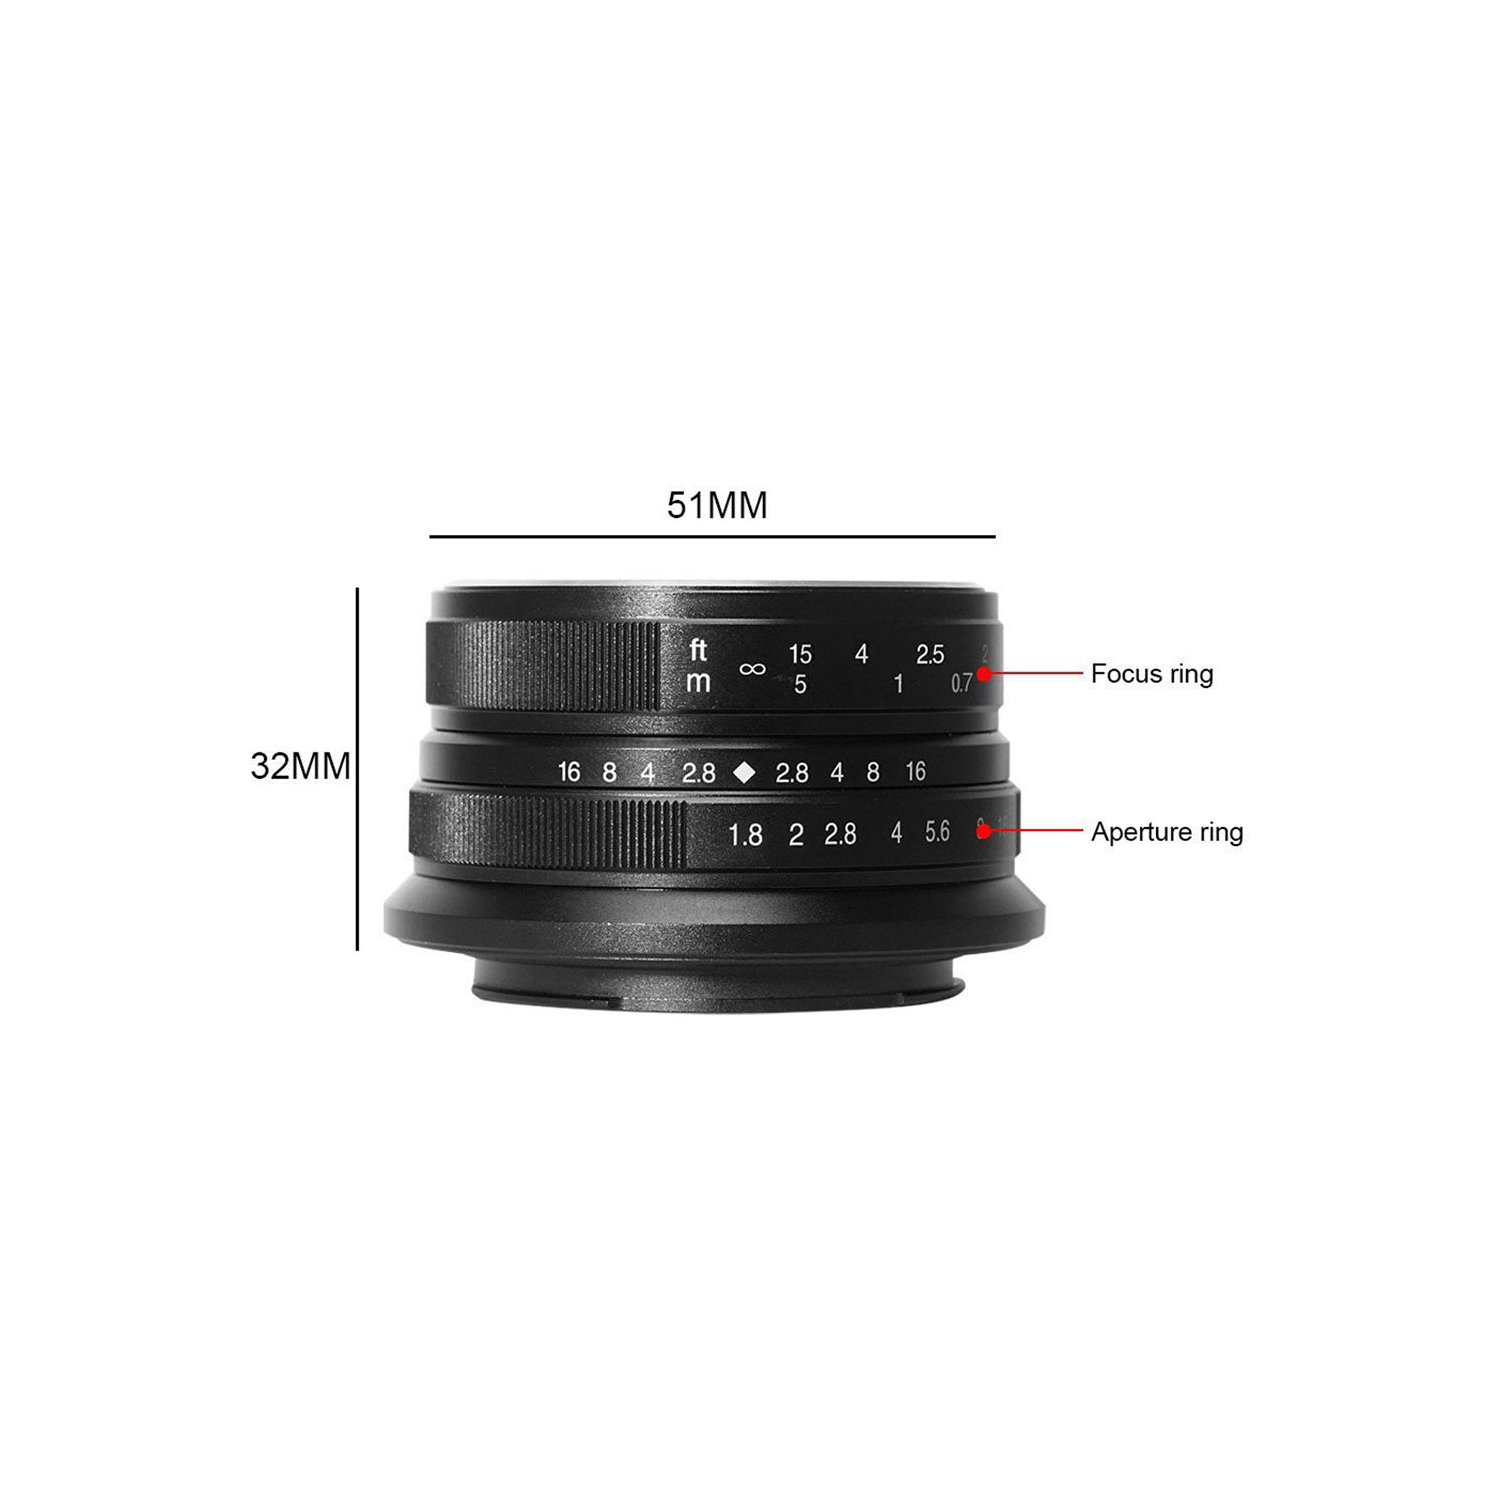 7artisans photoélectrique 25 mm f / 1,8 objectif pour le support Sony E